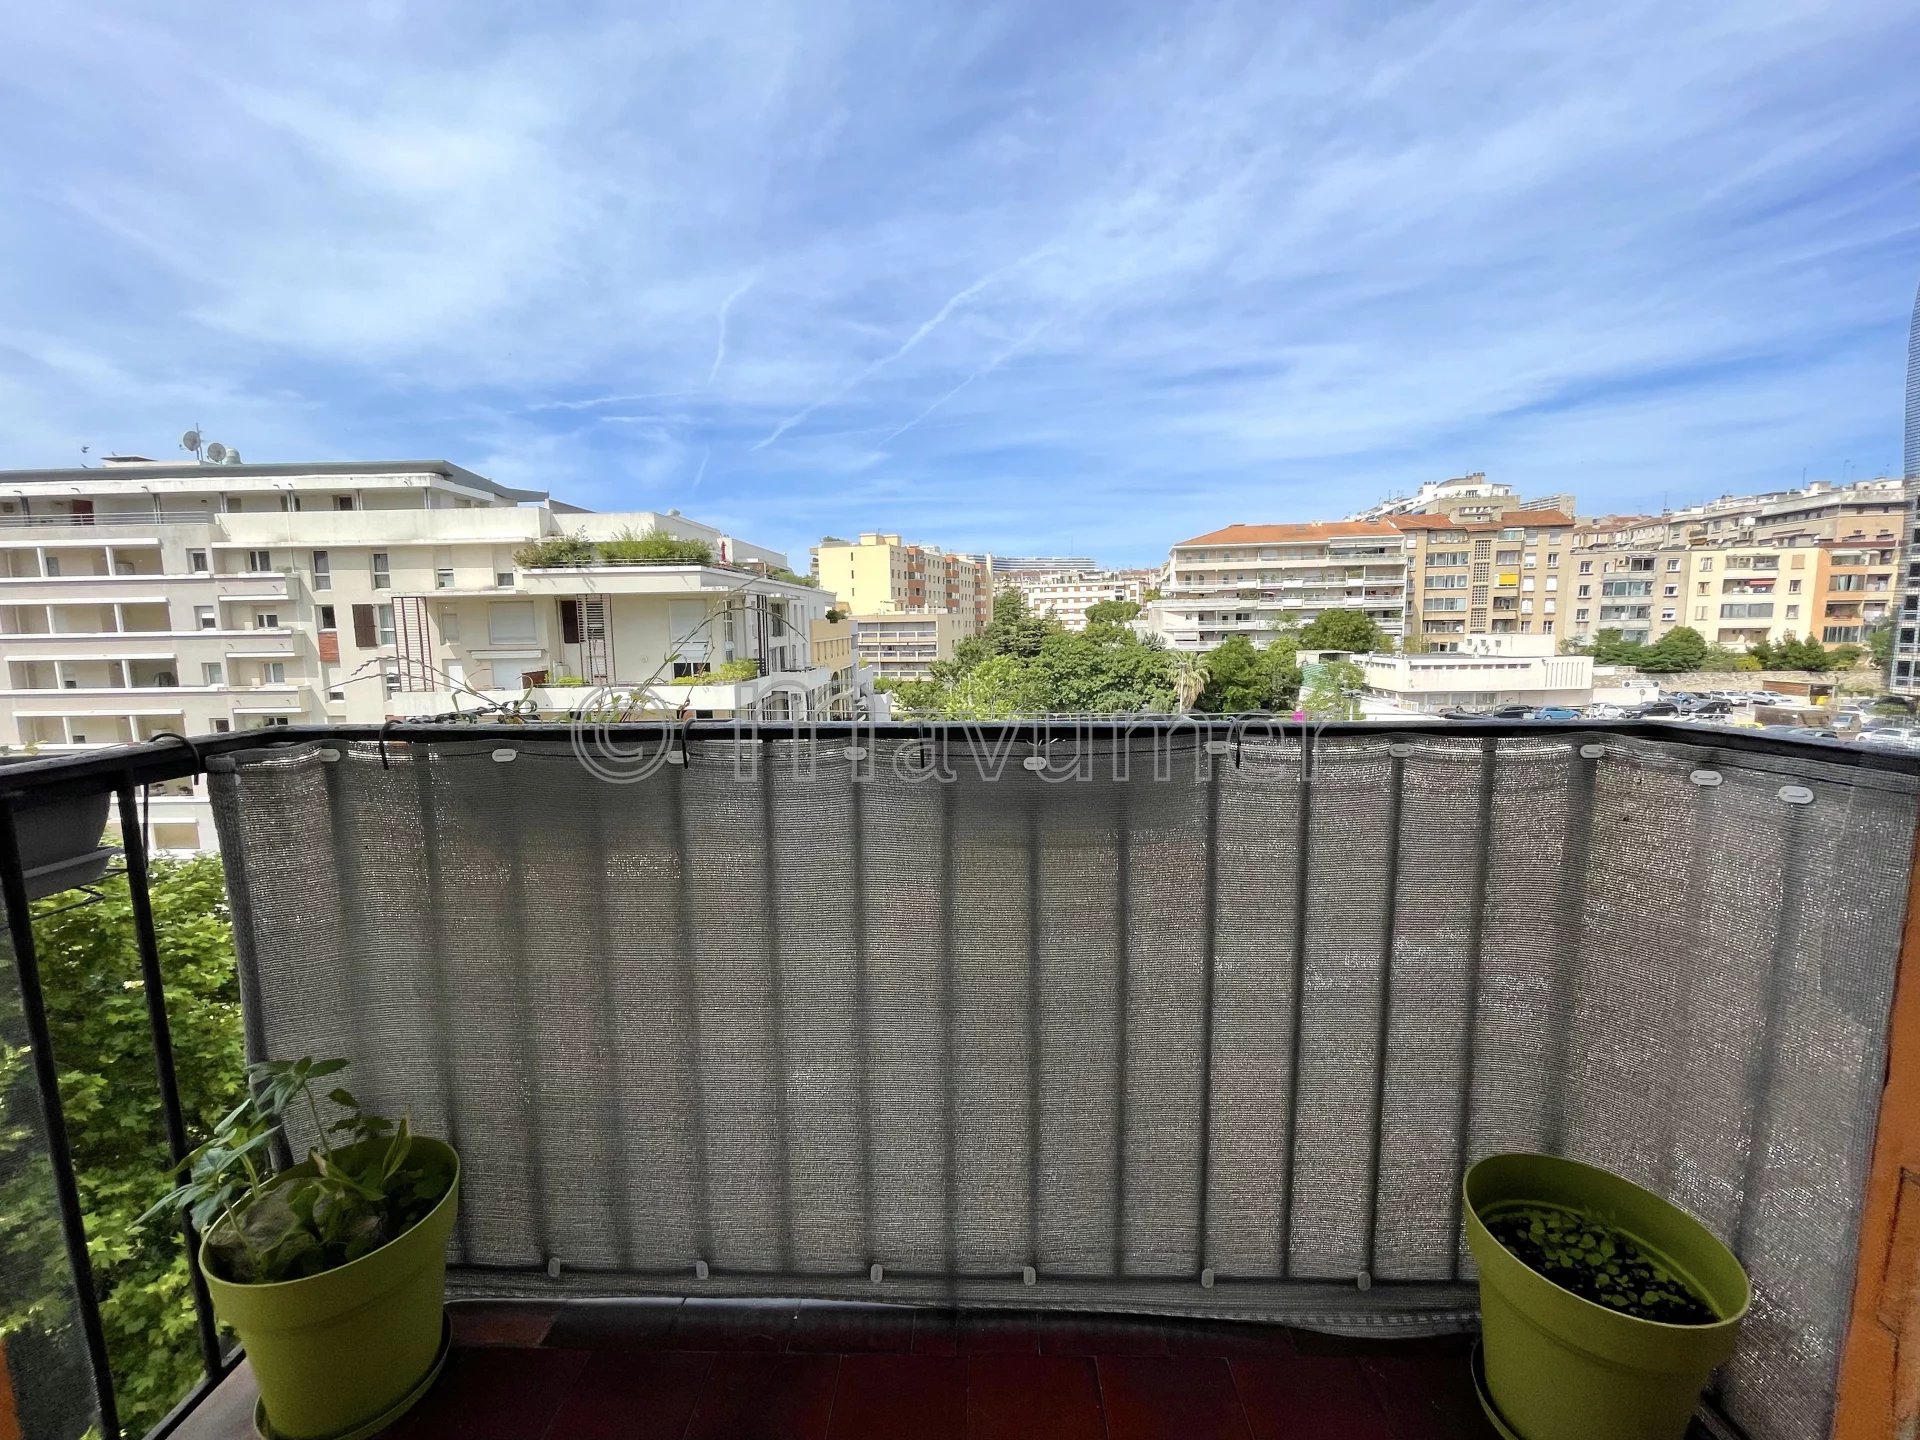 Sale Apartment - Marseille 8ème Périer